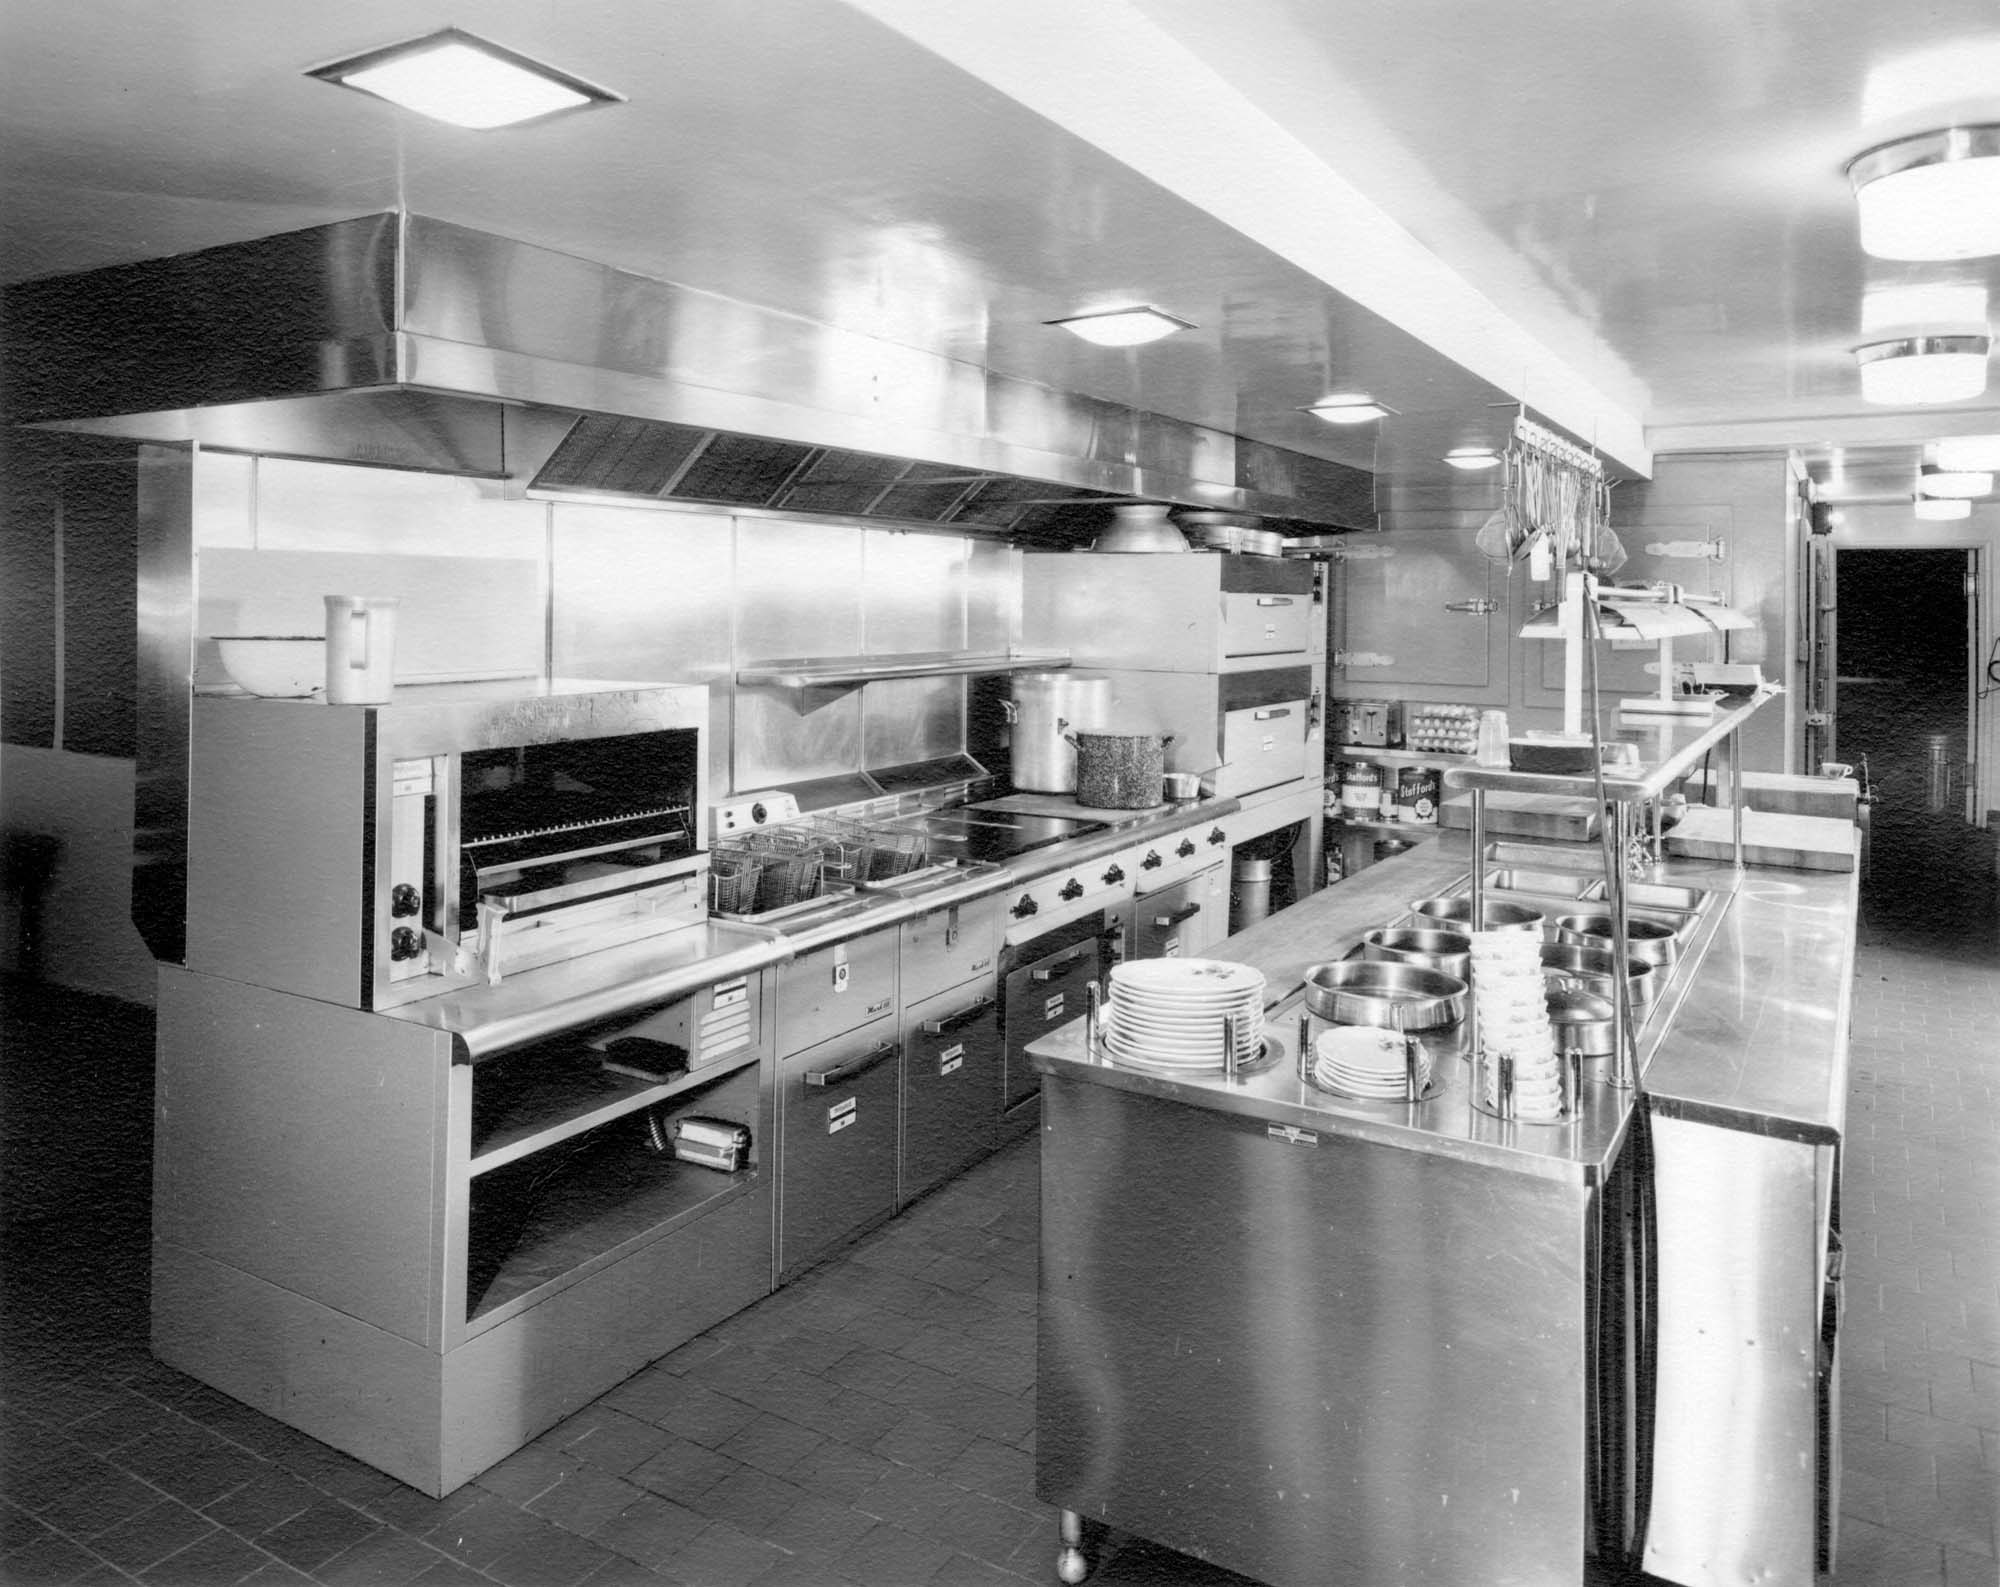 Waldorf Hotel kitchen